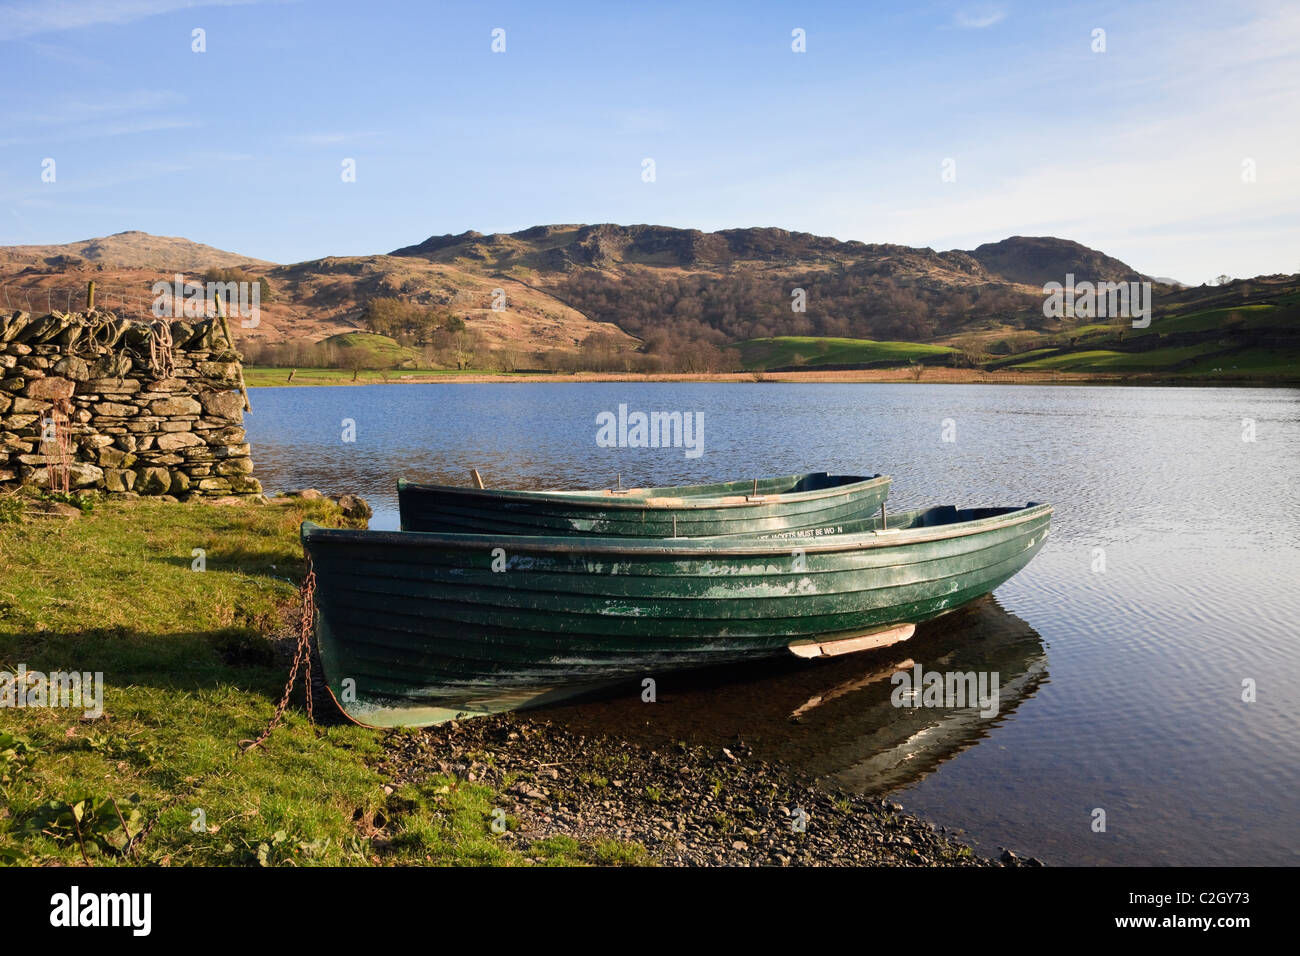 Bateaux de pêche en bois sur les rives du Tarn dans le Watendlath fells de Parc National de Lake District. Watendlath, Cumbria, England, UK, Grande-Bretagne Banque D'Images